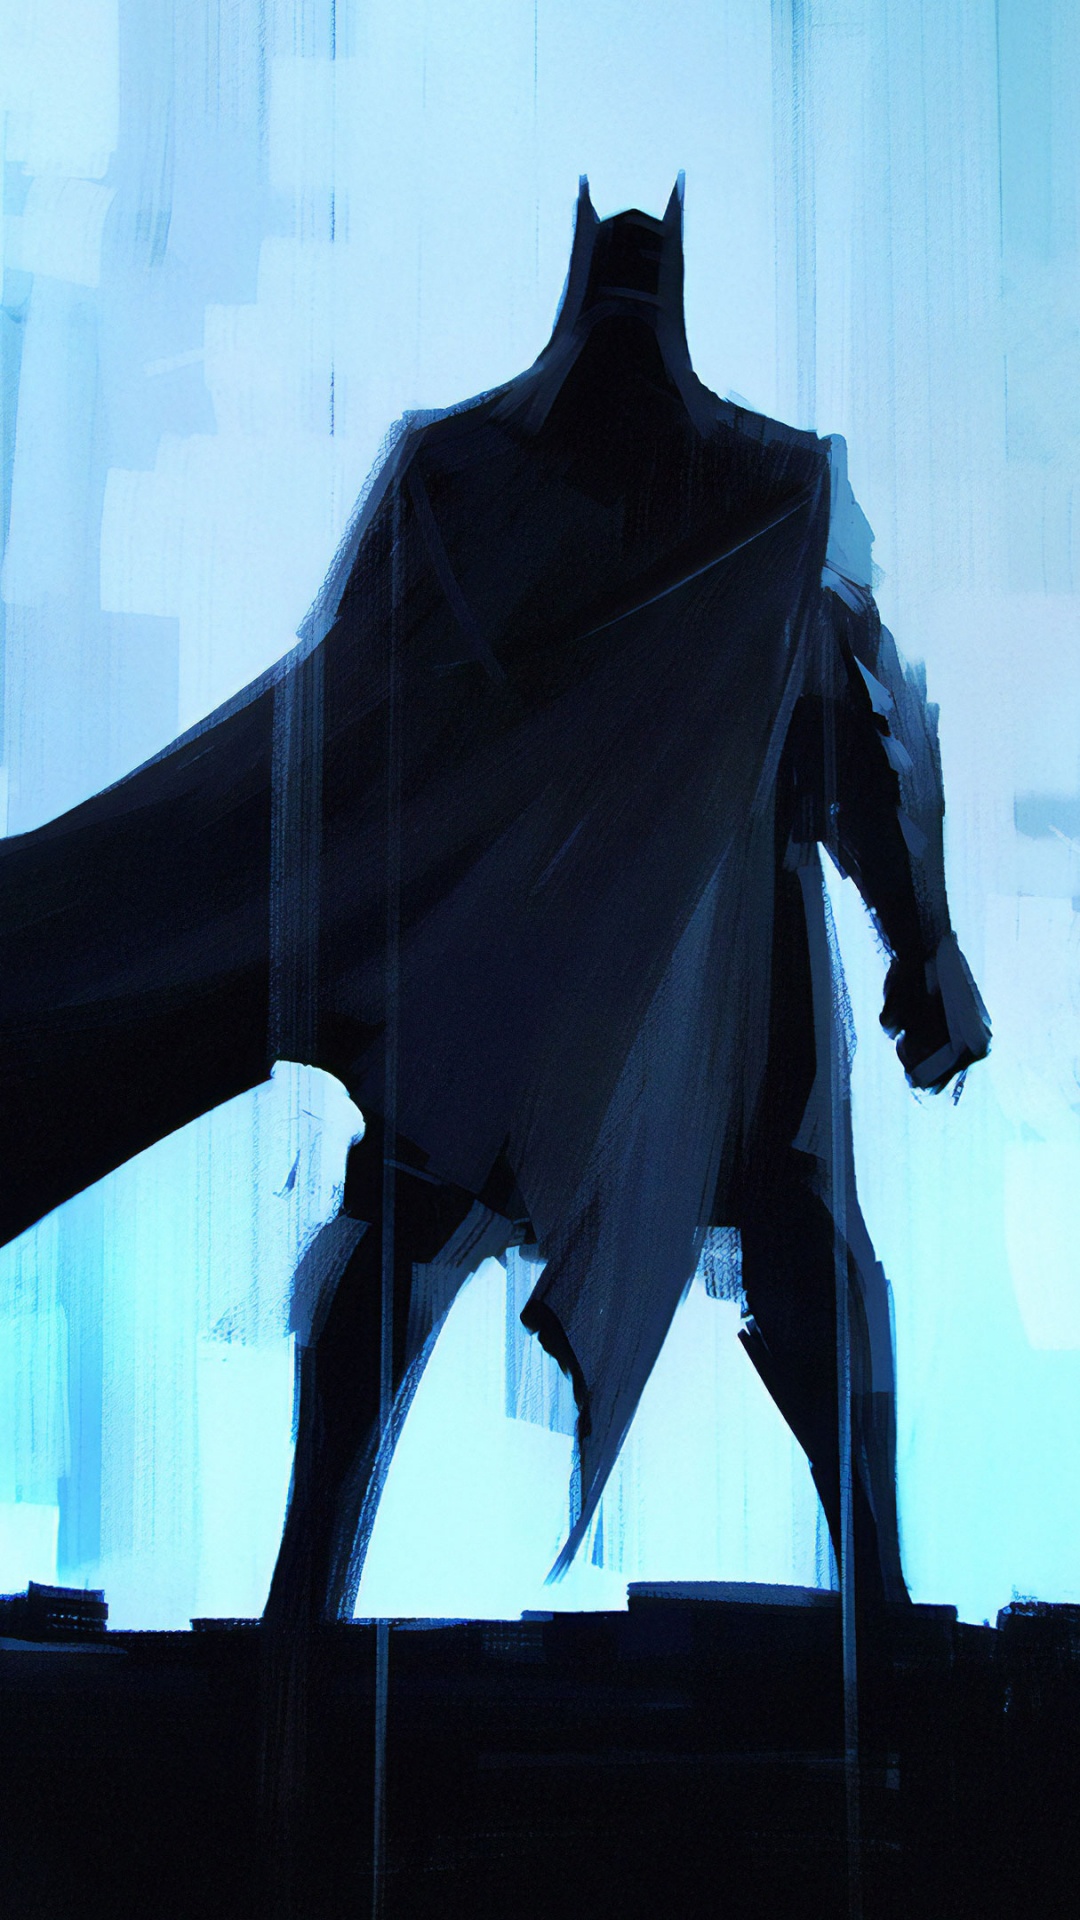 蝙蝠侠, 艺术, Dc漫画, 超级英雄, 正义联盟 壁纸 1080x1920 允许